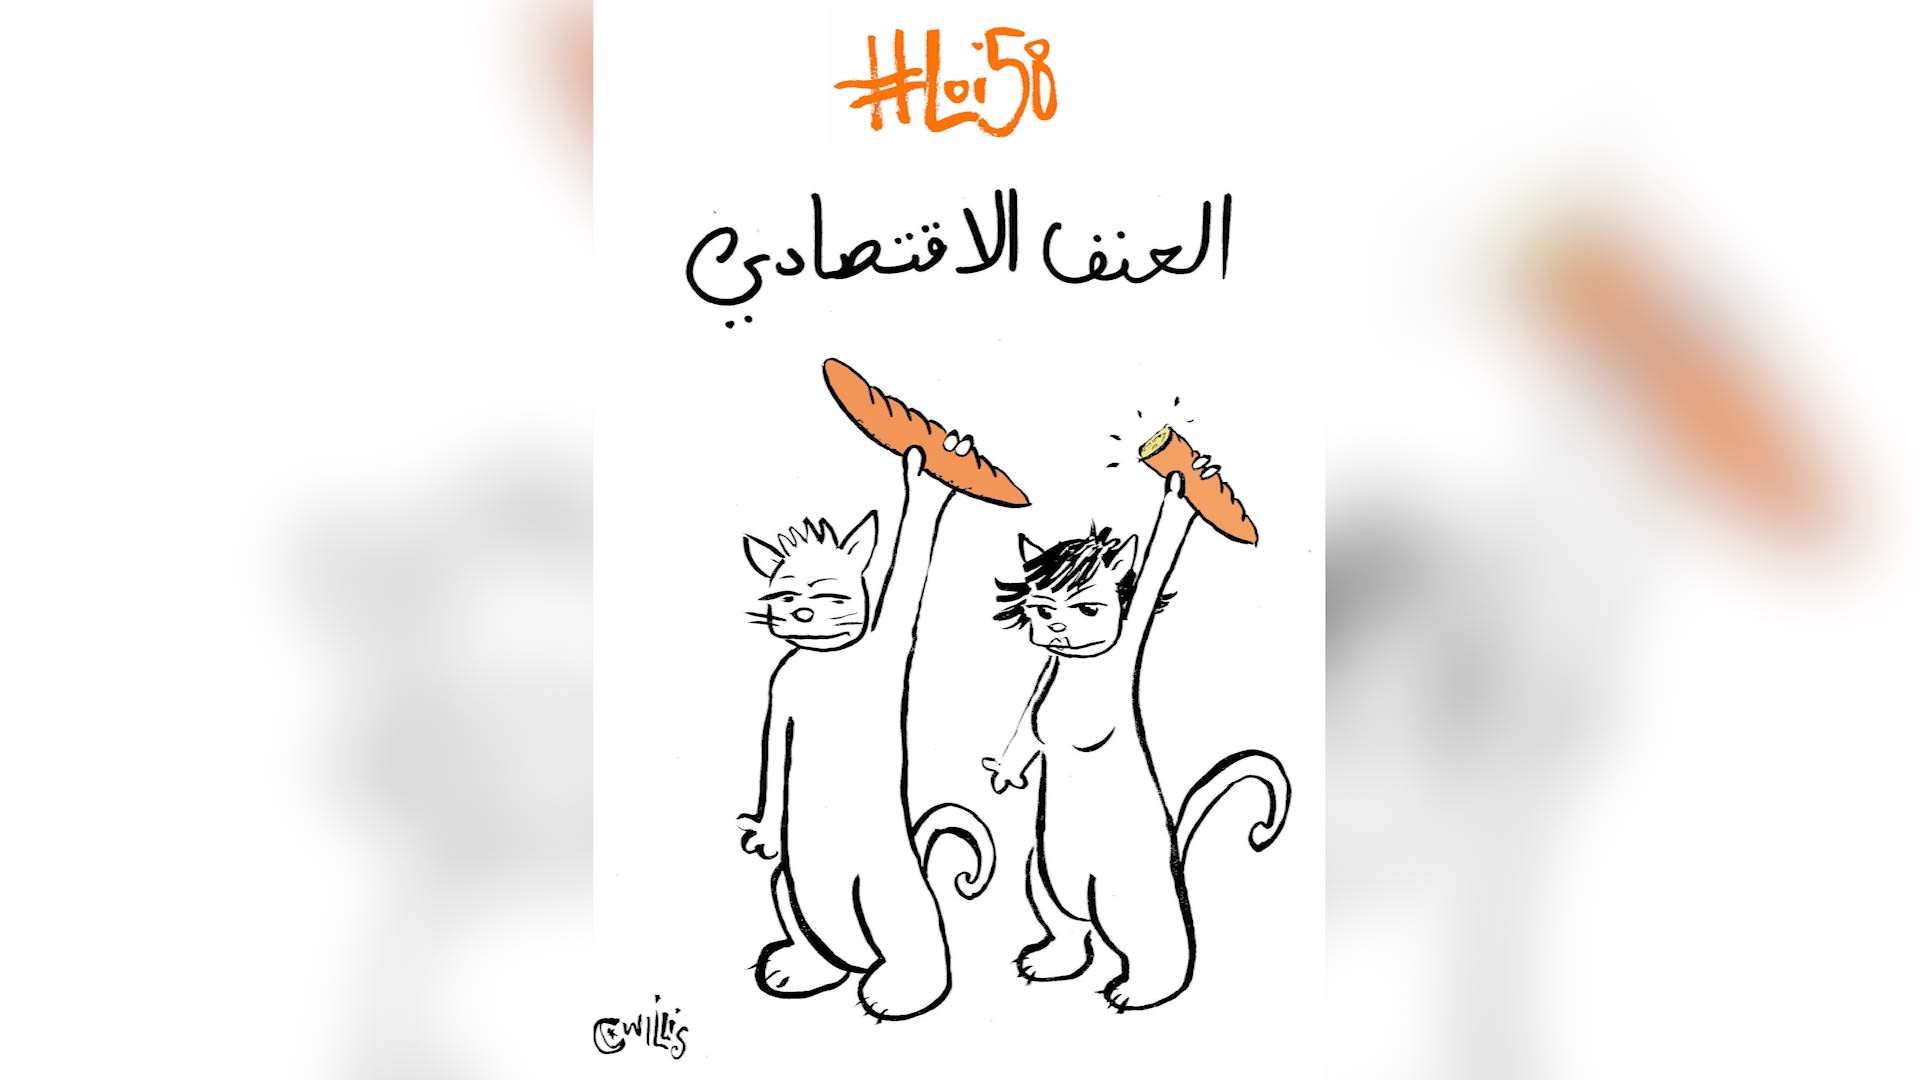 القط ويليس يحدث جمهوره "بجراءة" عن حياة الشارع التونسي بهذه الرسوم